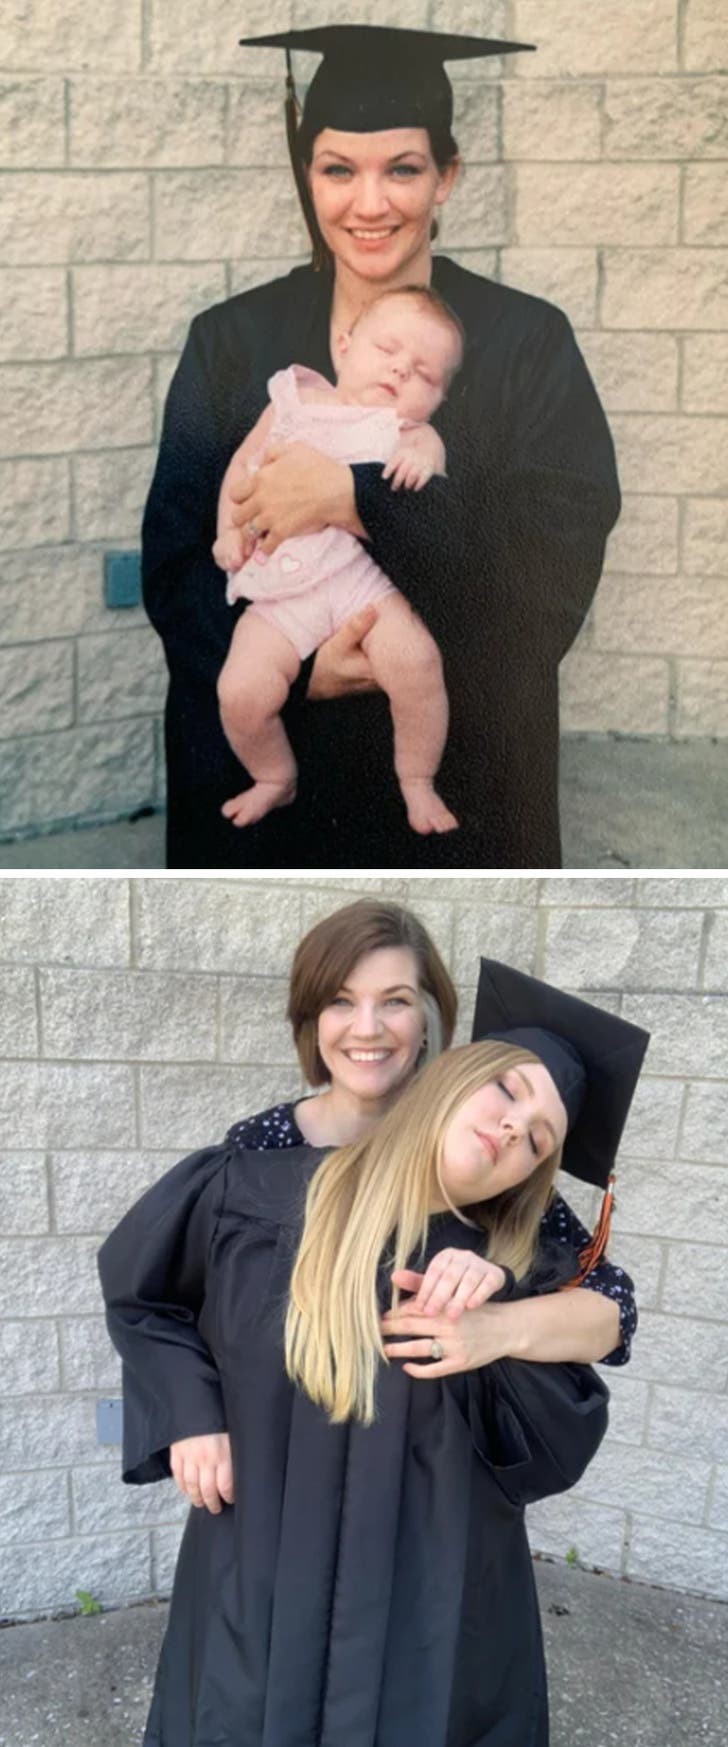 1. "Sur la première photo, c'est moi le jour de la remise des diplômes, tenant ma fille dans mes bras... sur la deuxième photo, c'est ma fille qui s'est diplômée !"